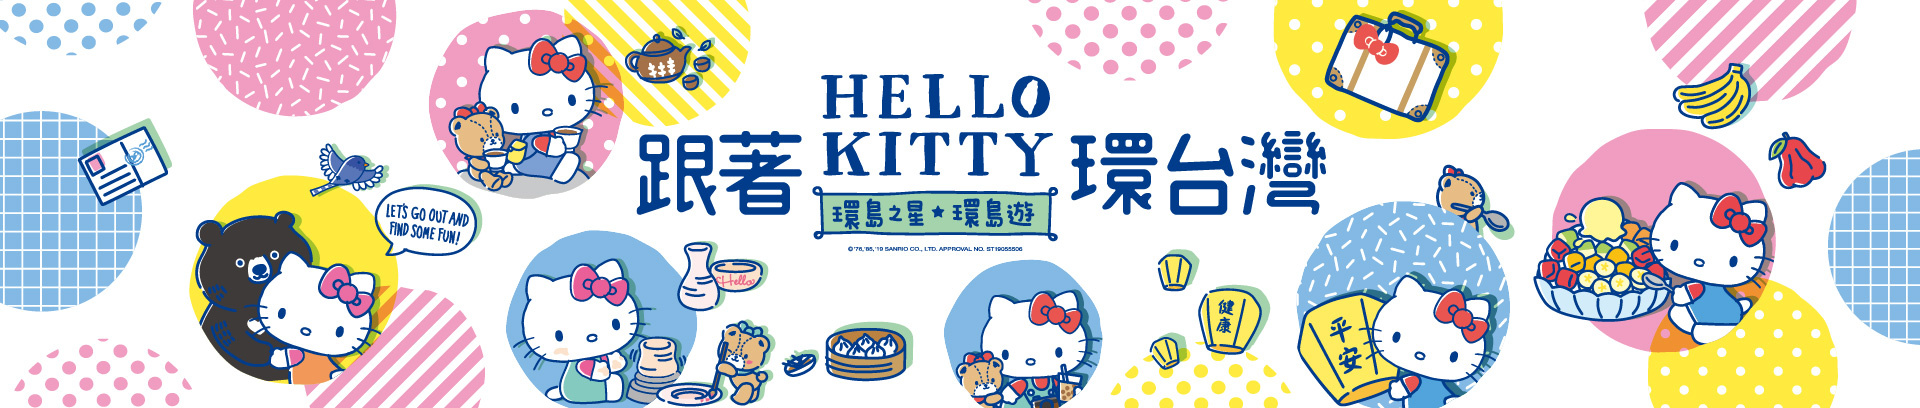 環島之星Hello Kitty繽紛列車,易遊網,eztravel